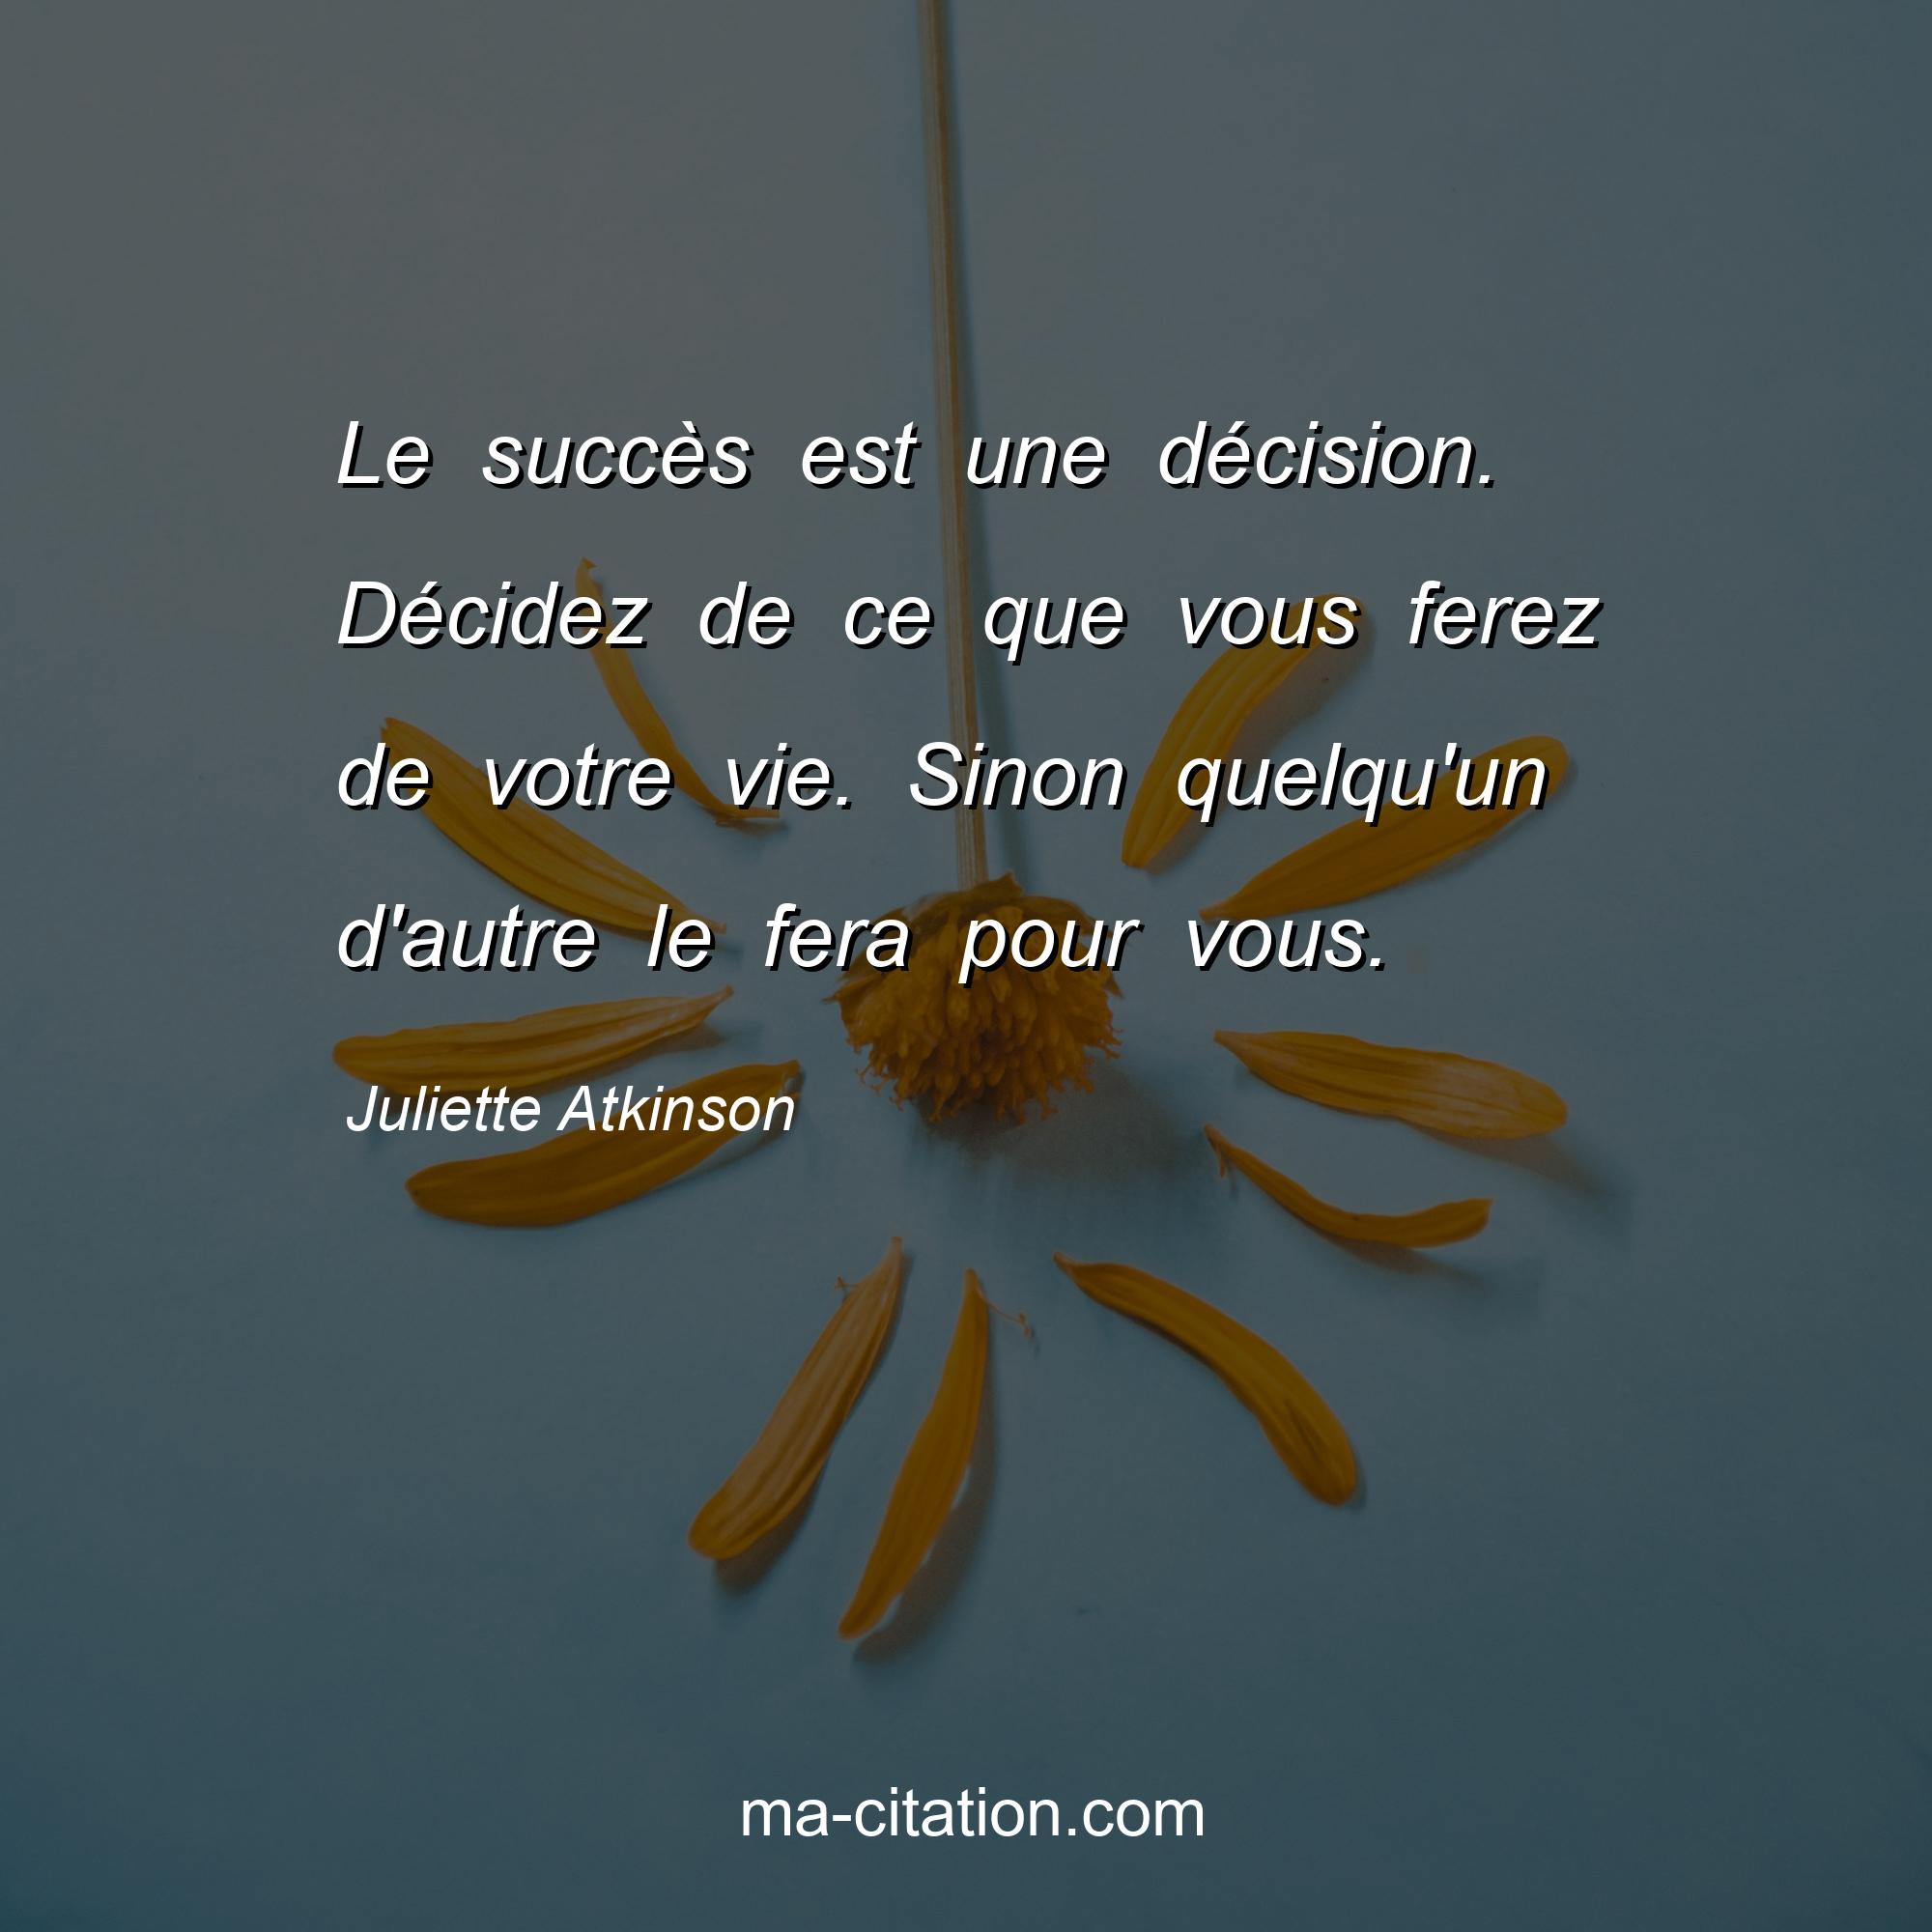 Juliette Atkinson : Le succès est une décision. Décidez de ce que vous ferez de votre vie. Sinon quelqu'un d'autre le fera pour vous.